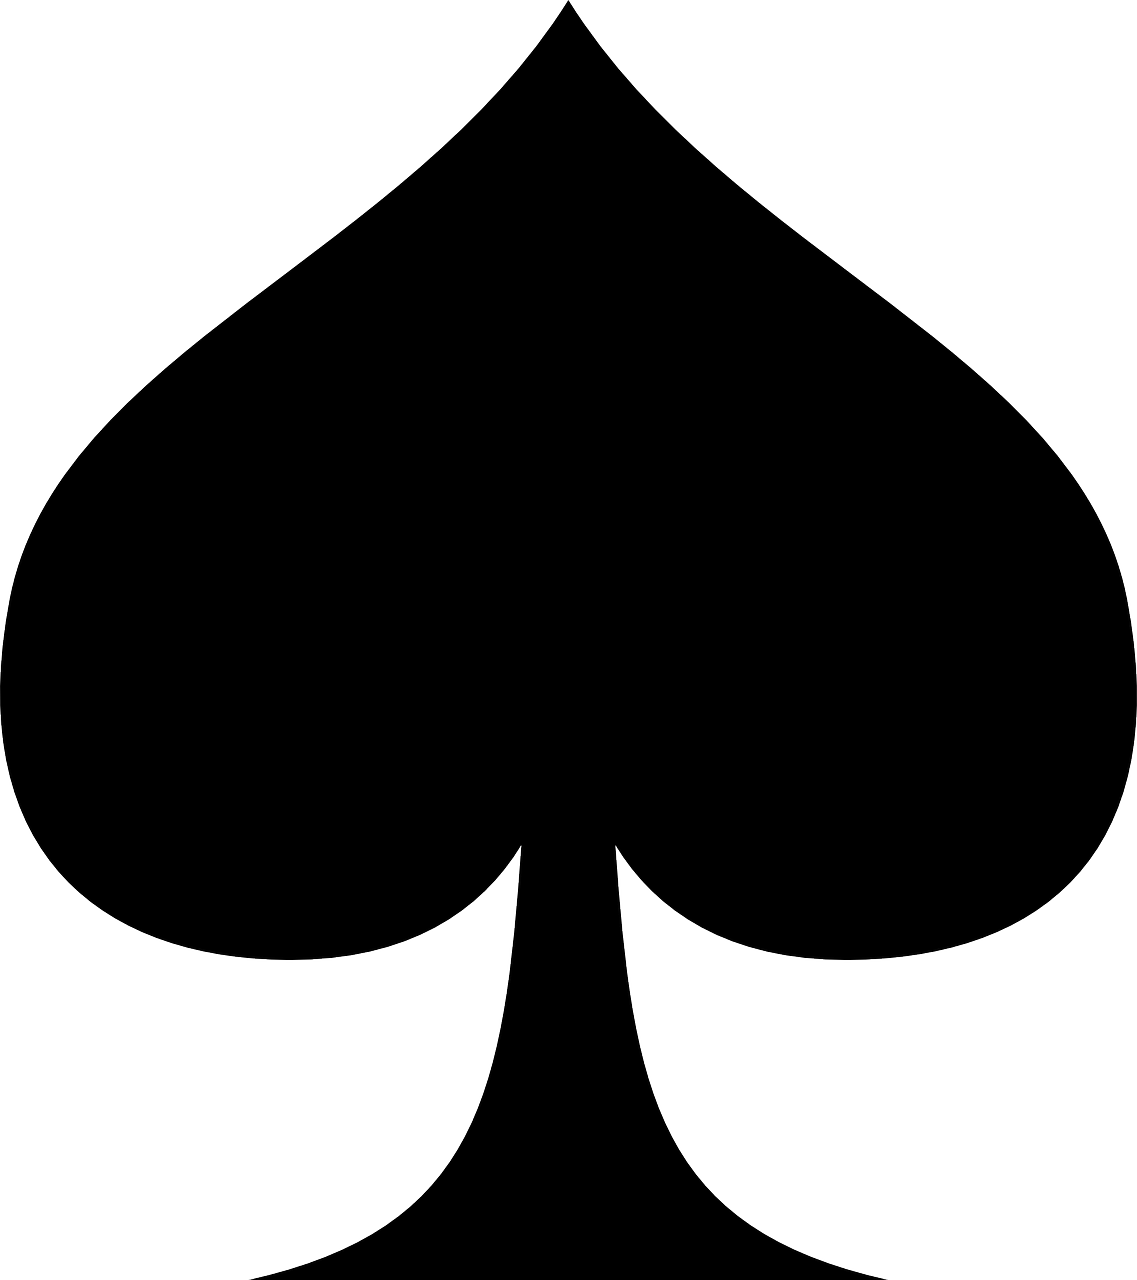 a black spade symbol on a white background, by Thomas Tudor, deck, no - text no - logo, high quality screenshot